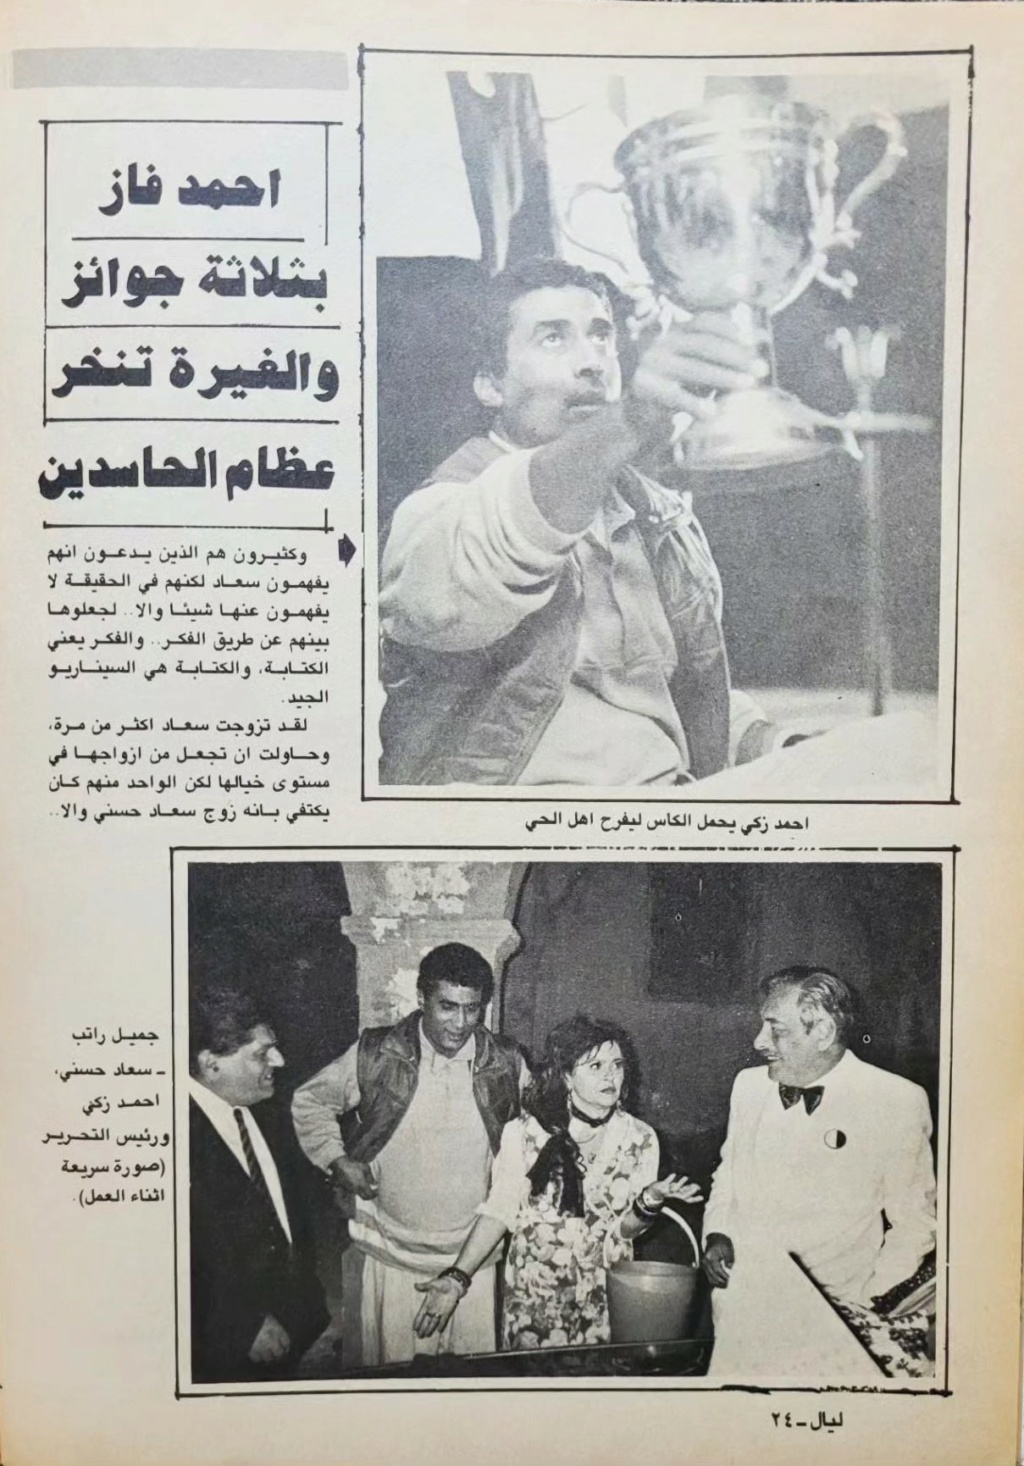 1988 - مقال صحفي : سهرة مع سعاد حسني 1988 م 326